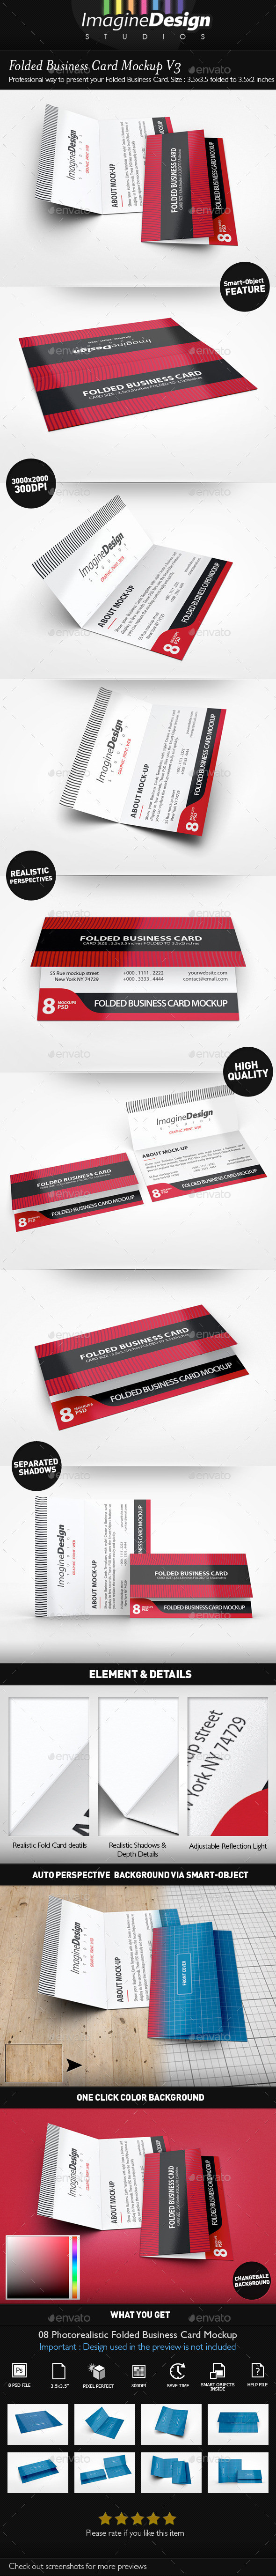 Folded business card mockup v3